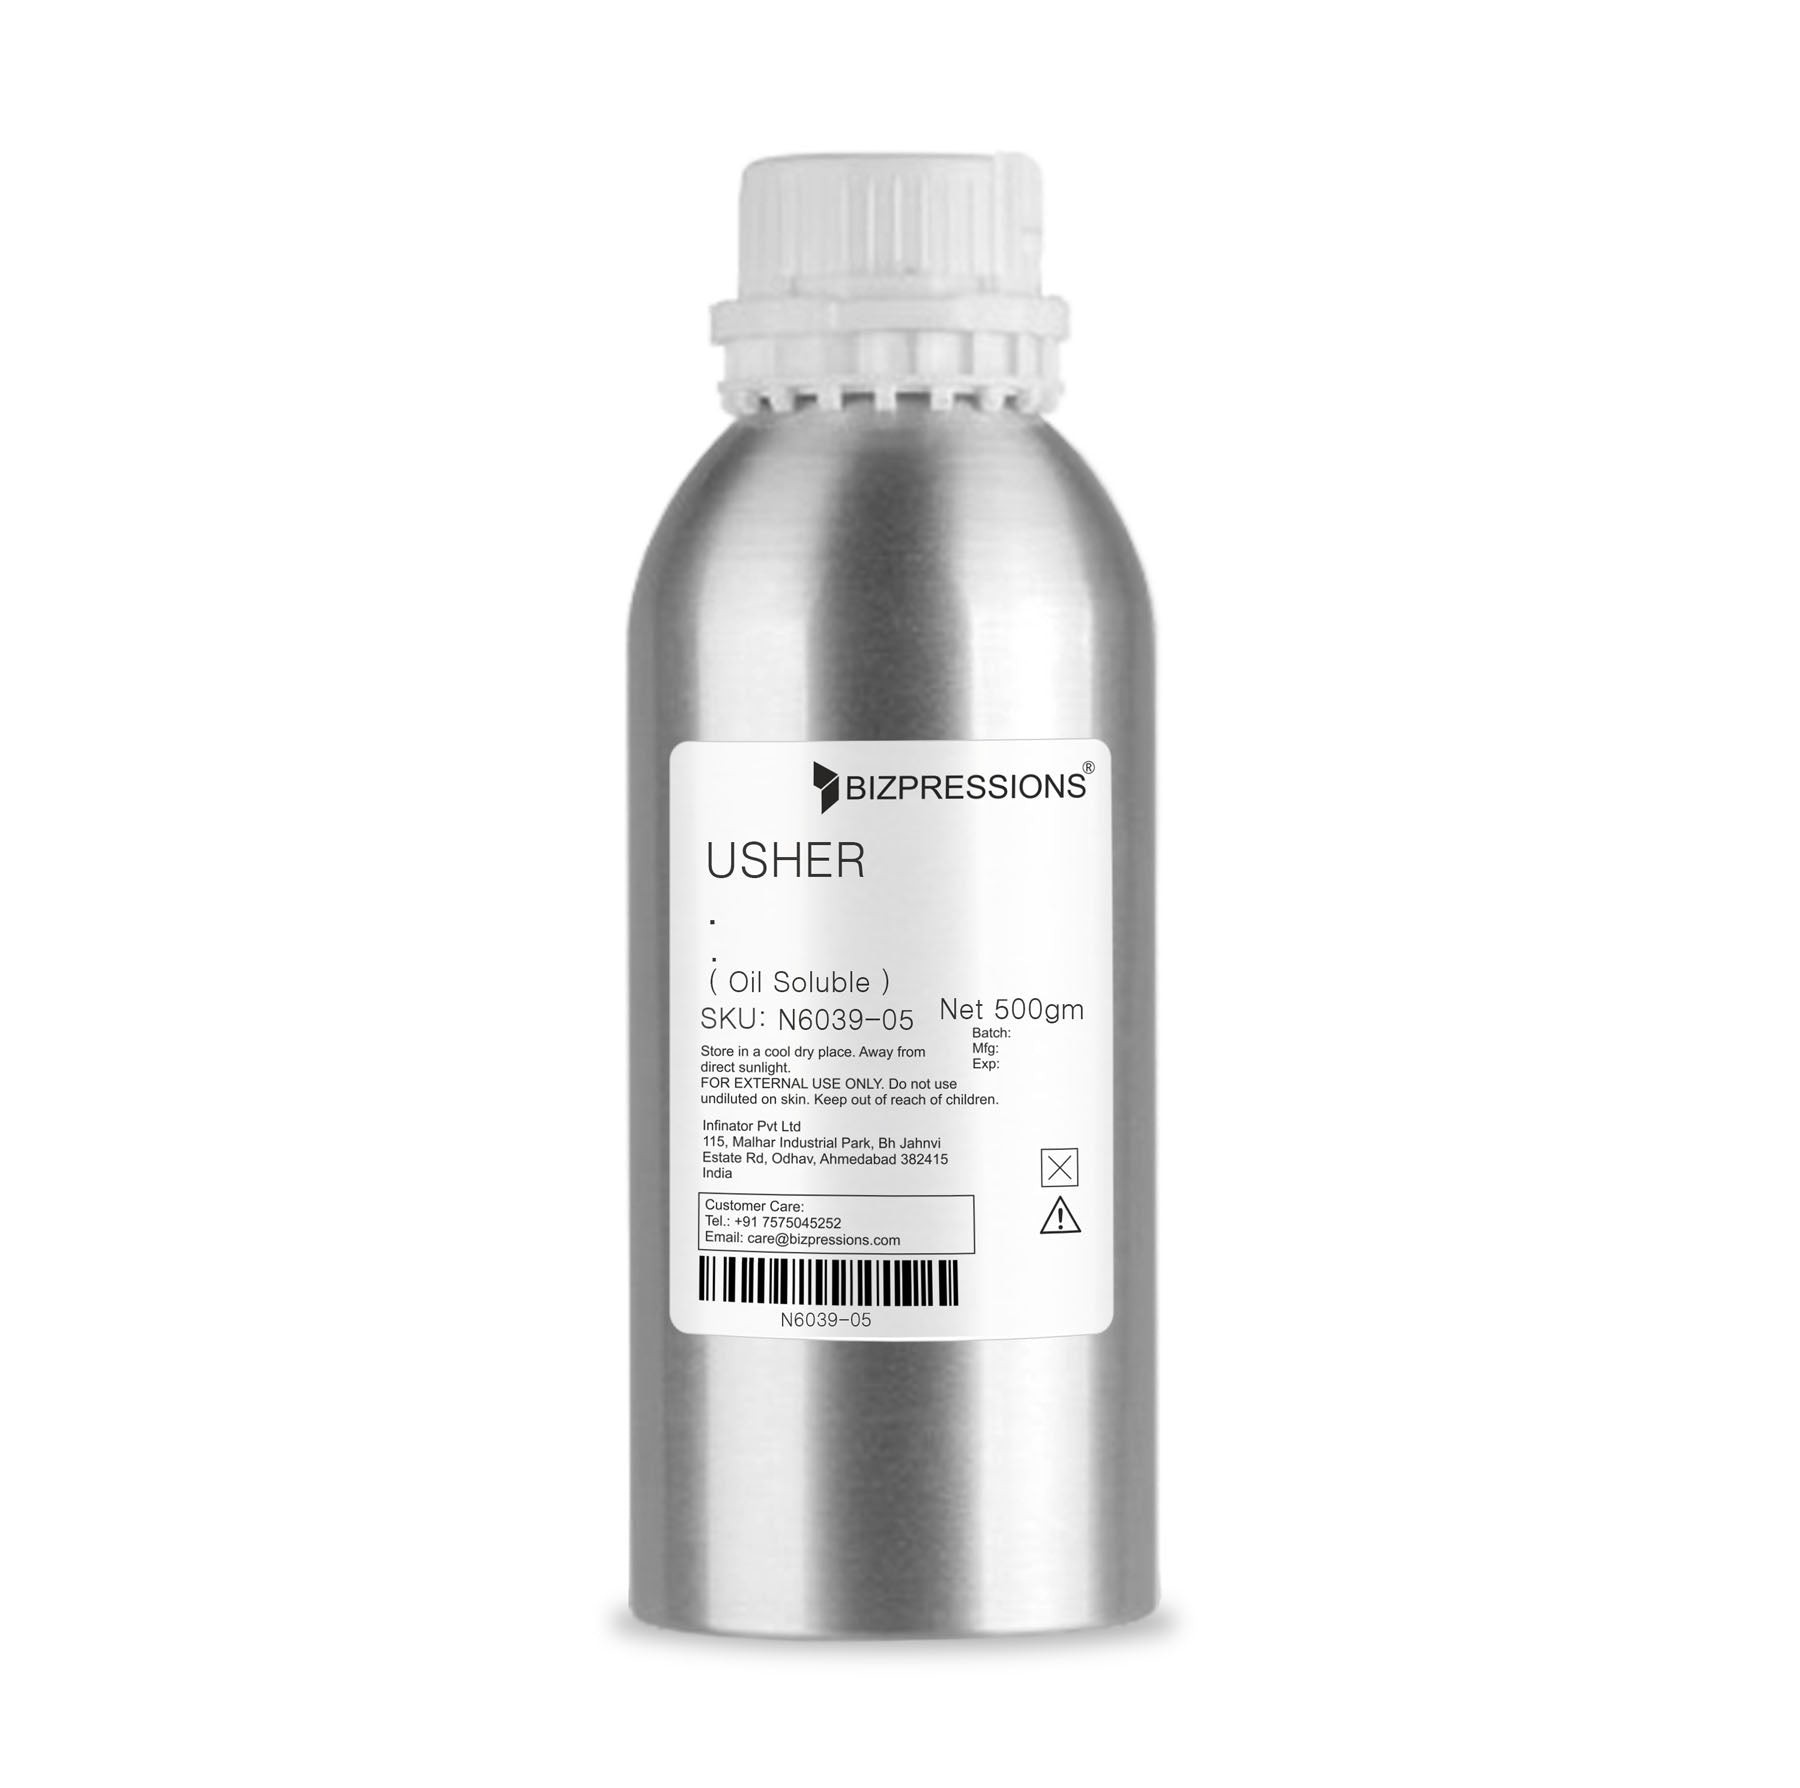 USHER - Fragrance ( Oil Soluble ) - 500 gm